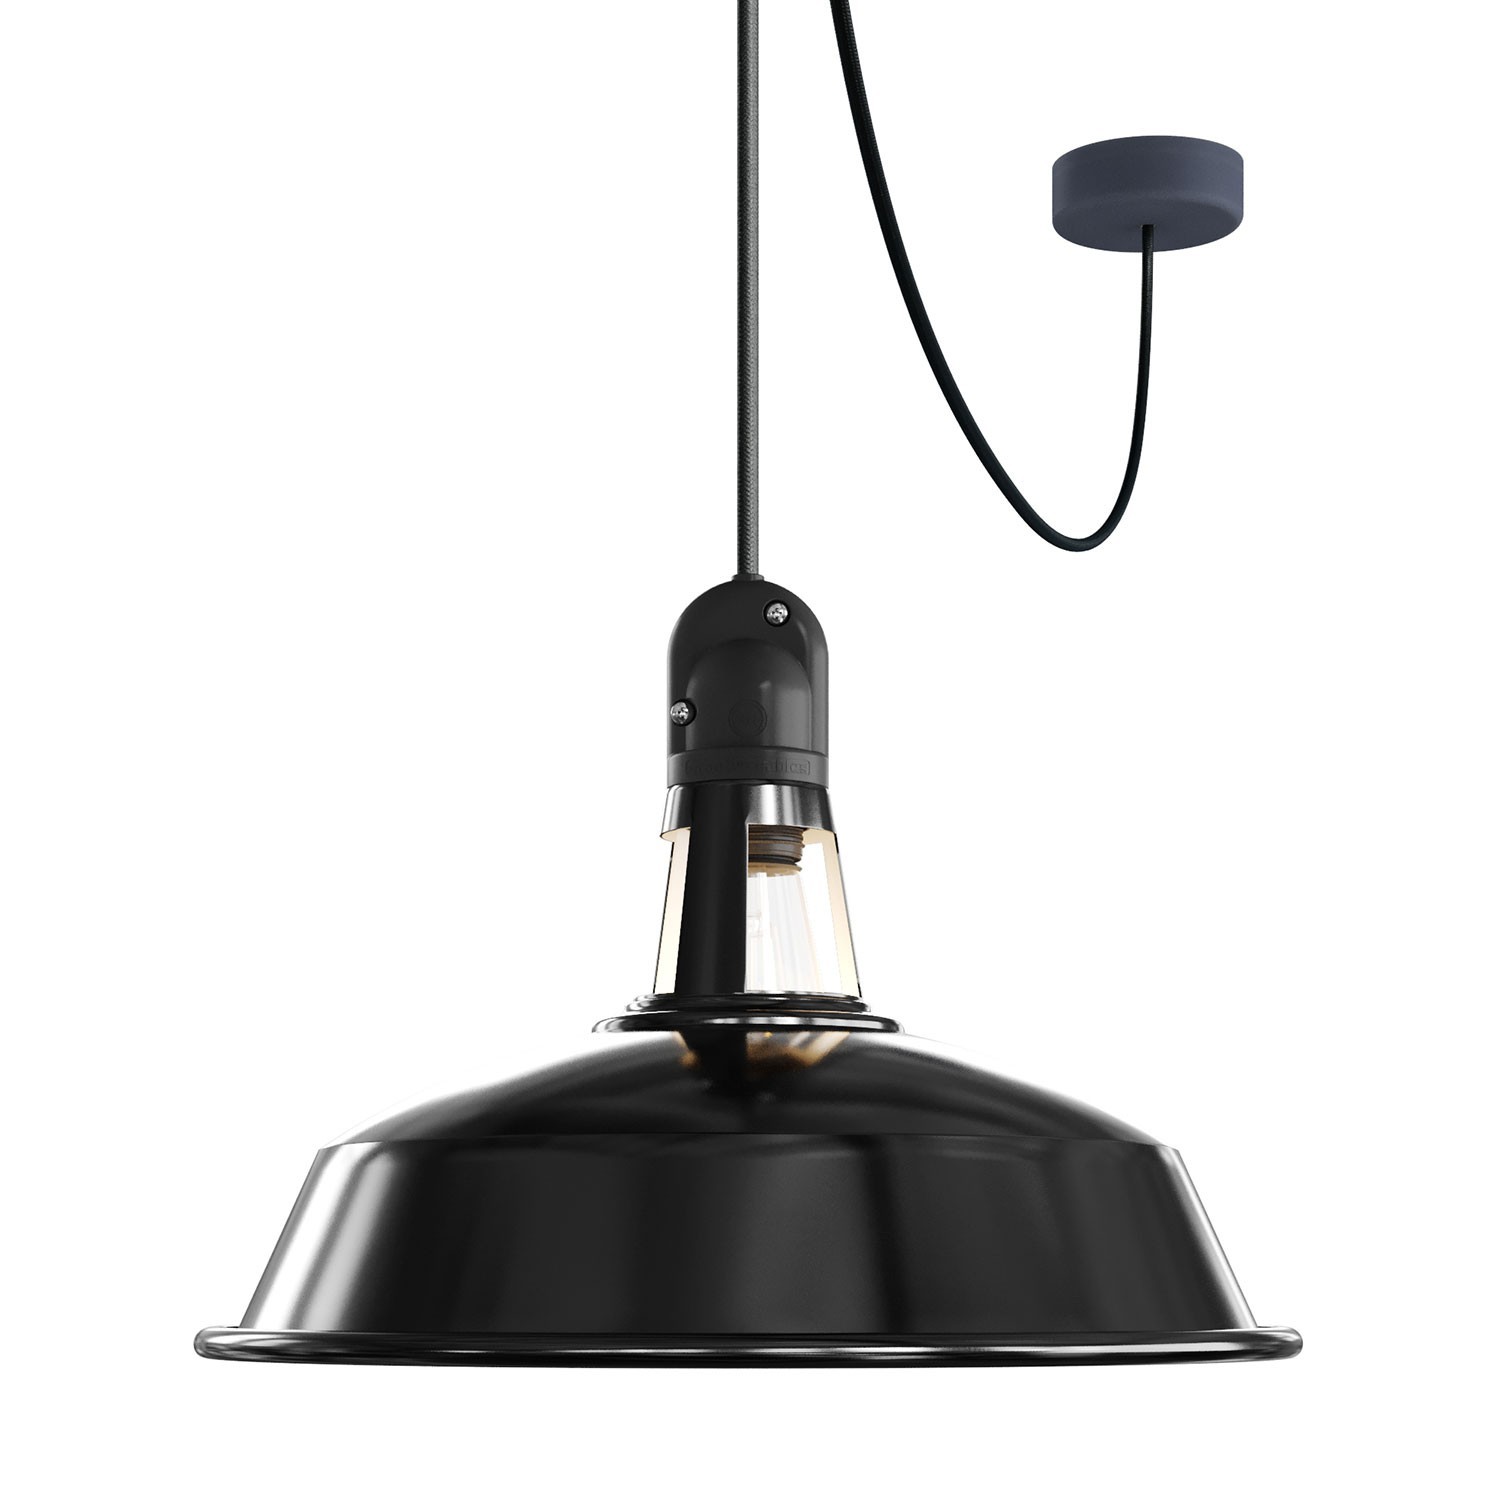 EIVA Outdoor-Pendelleuchte mit Lampenschirm, Textilkabel, Deckenbefestigung, Silikon-Lampenbaldachin und Lampenfassung, IP65